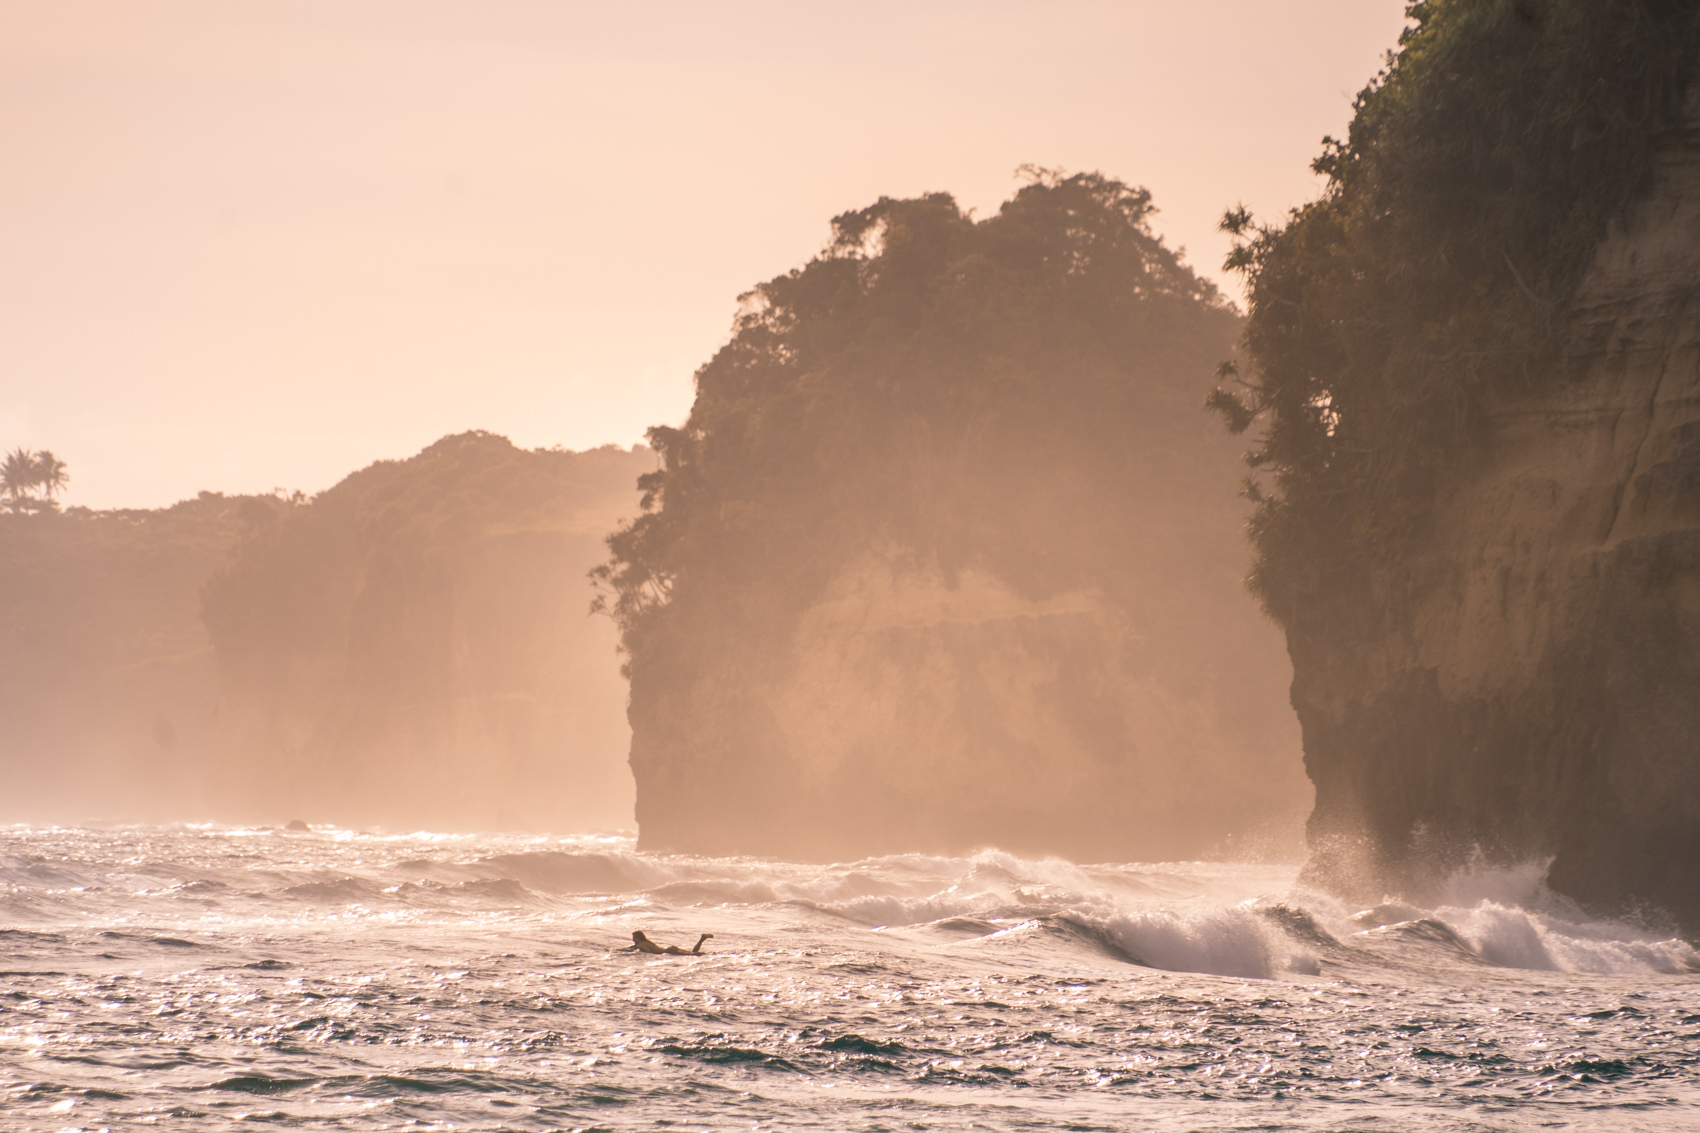 Beste surfbestemmingen ter wereld, Sumba Indonesië